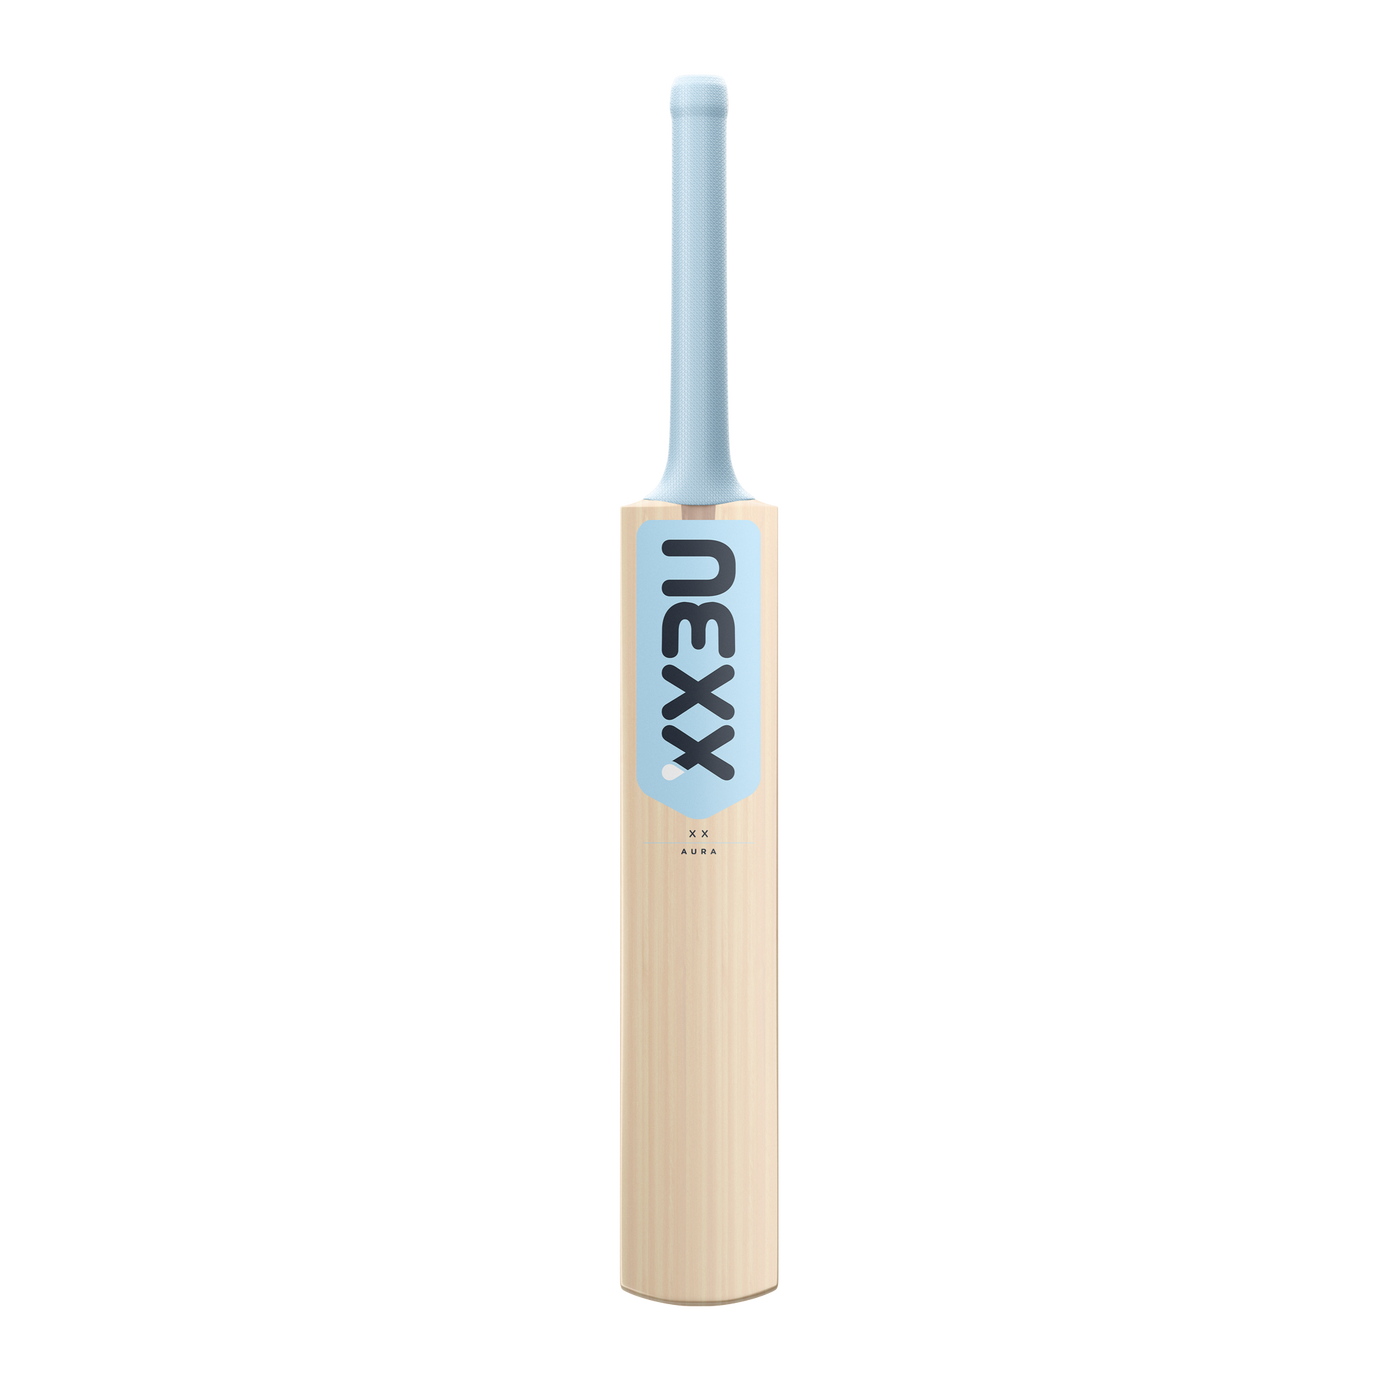 NEXX XX Girls Cricket Bat with Aura Stickers